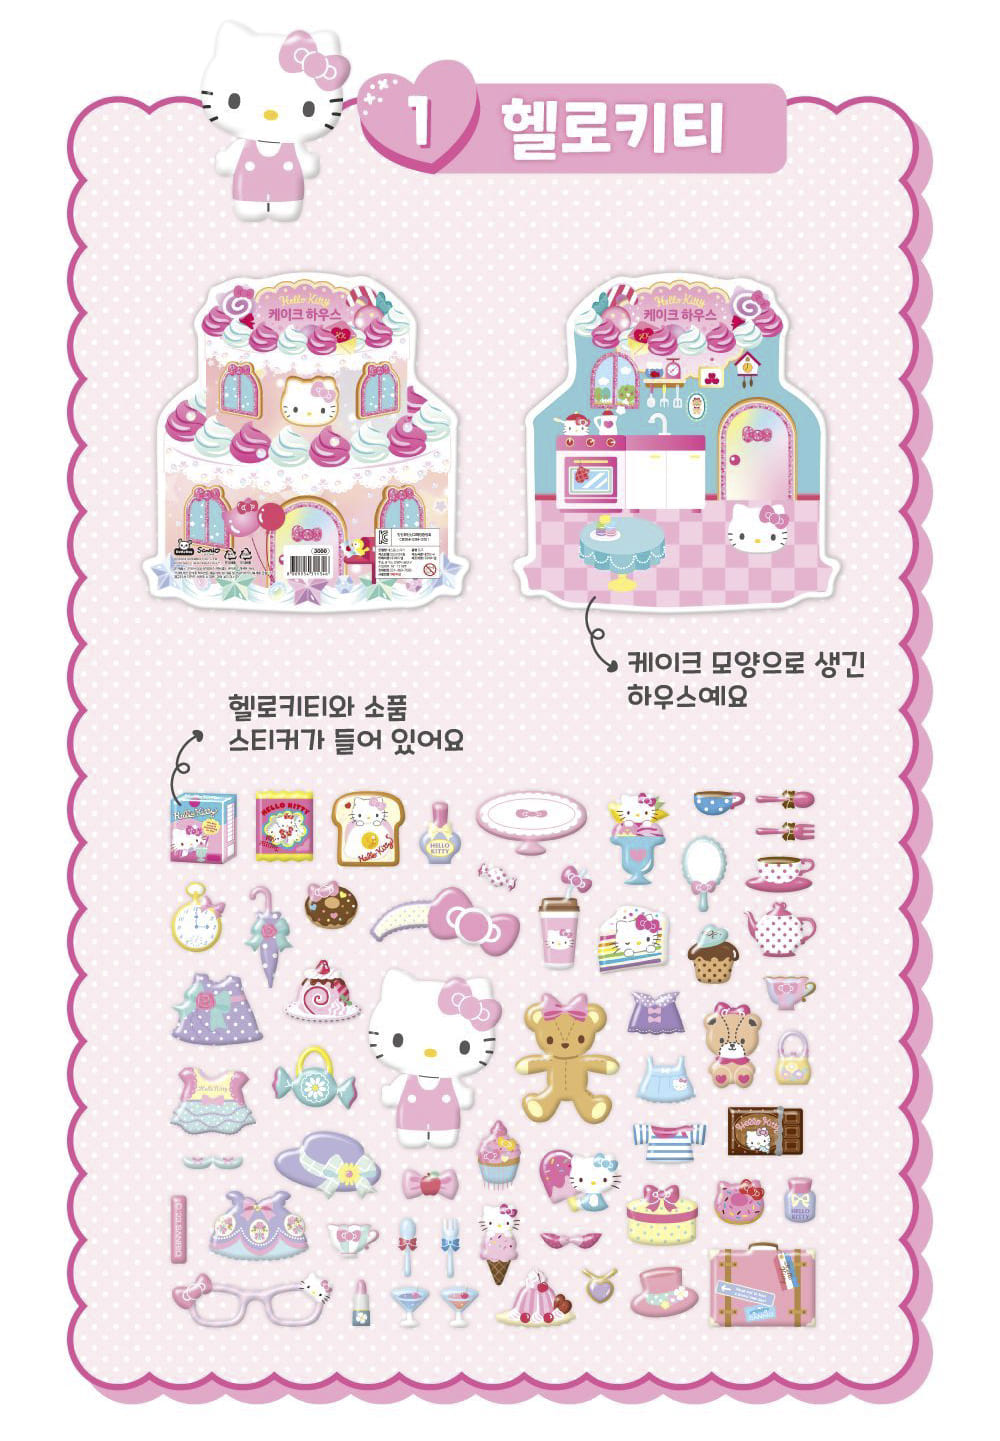 Stickers Sanrio Cake House Hello Kitty